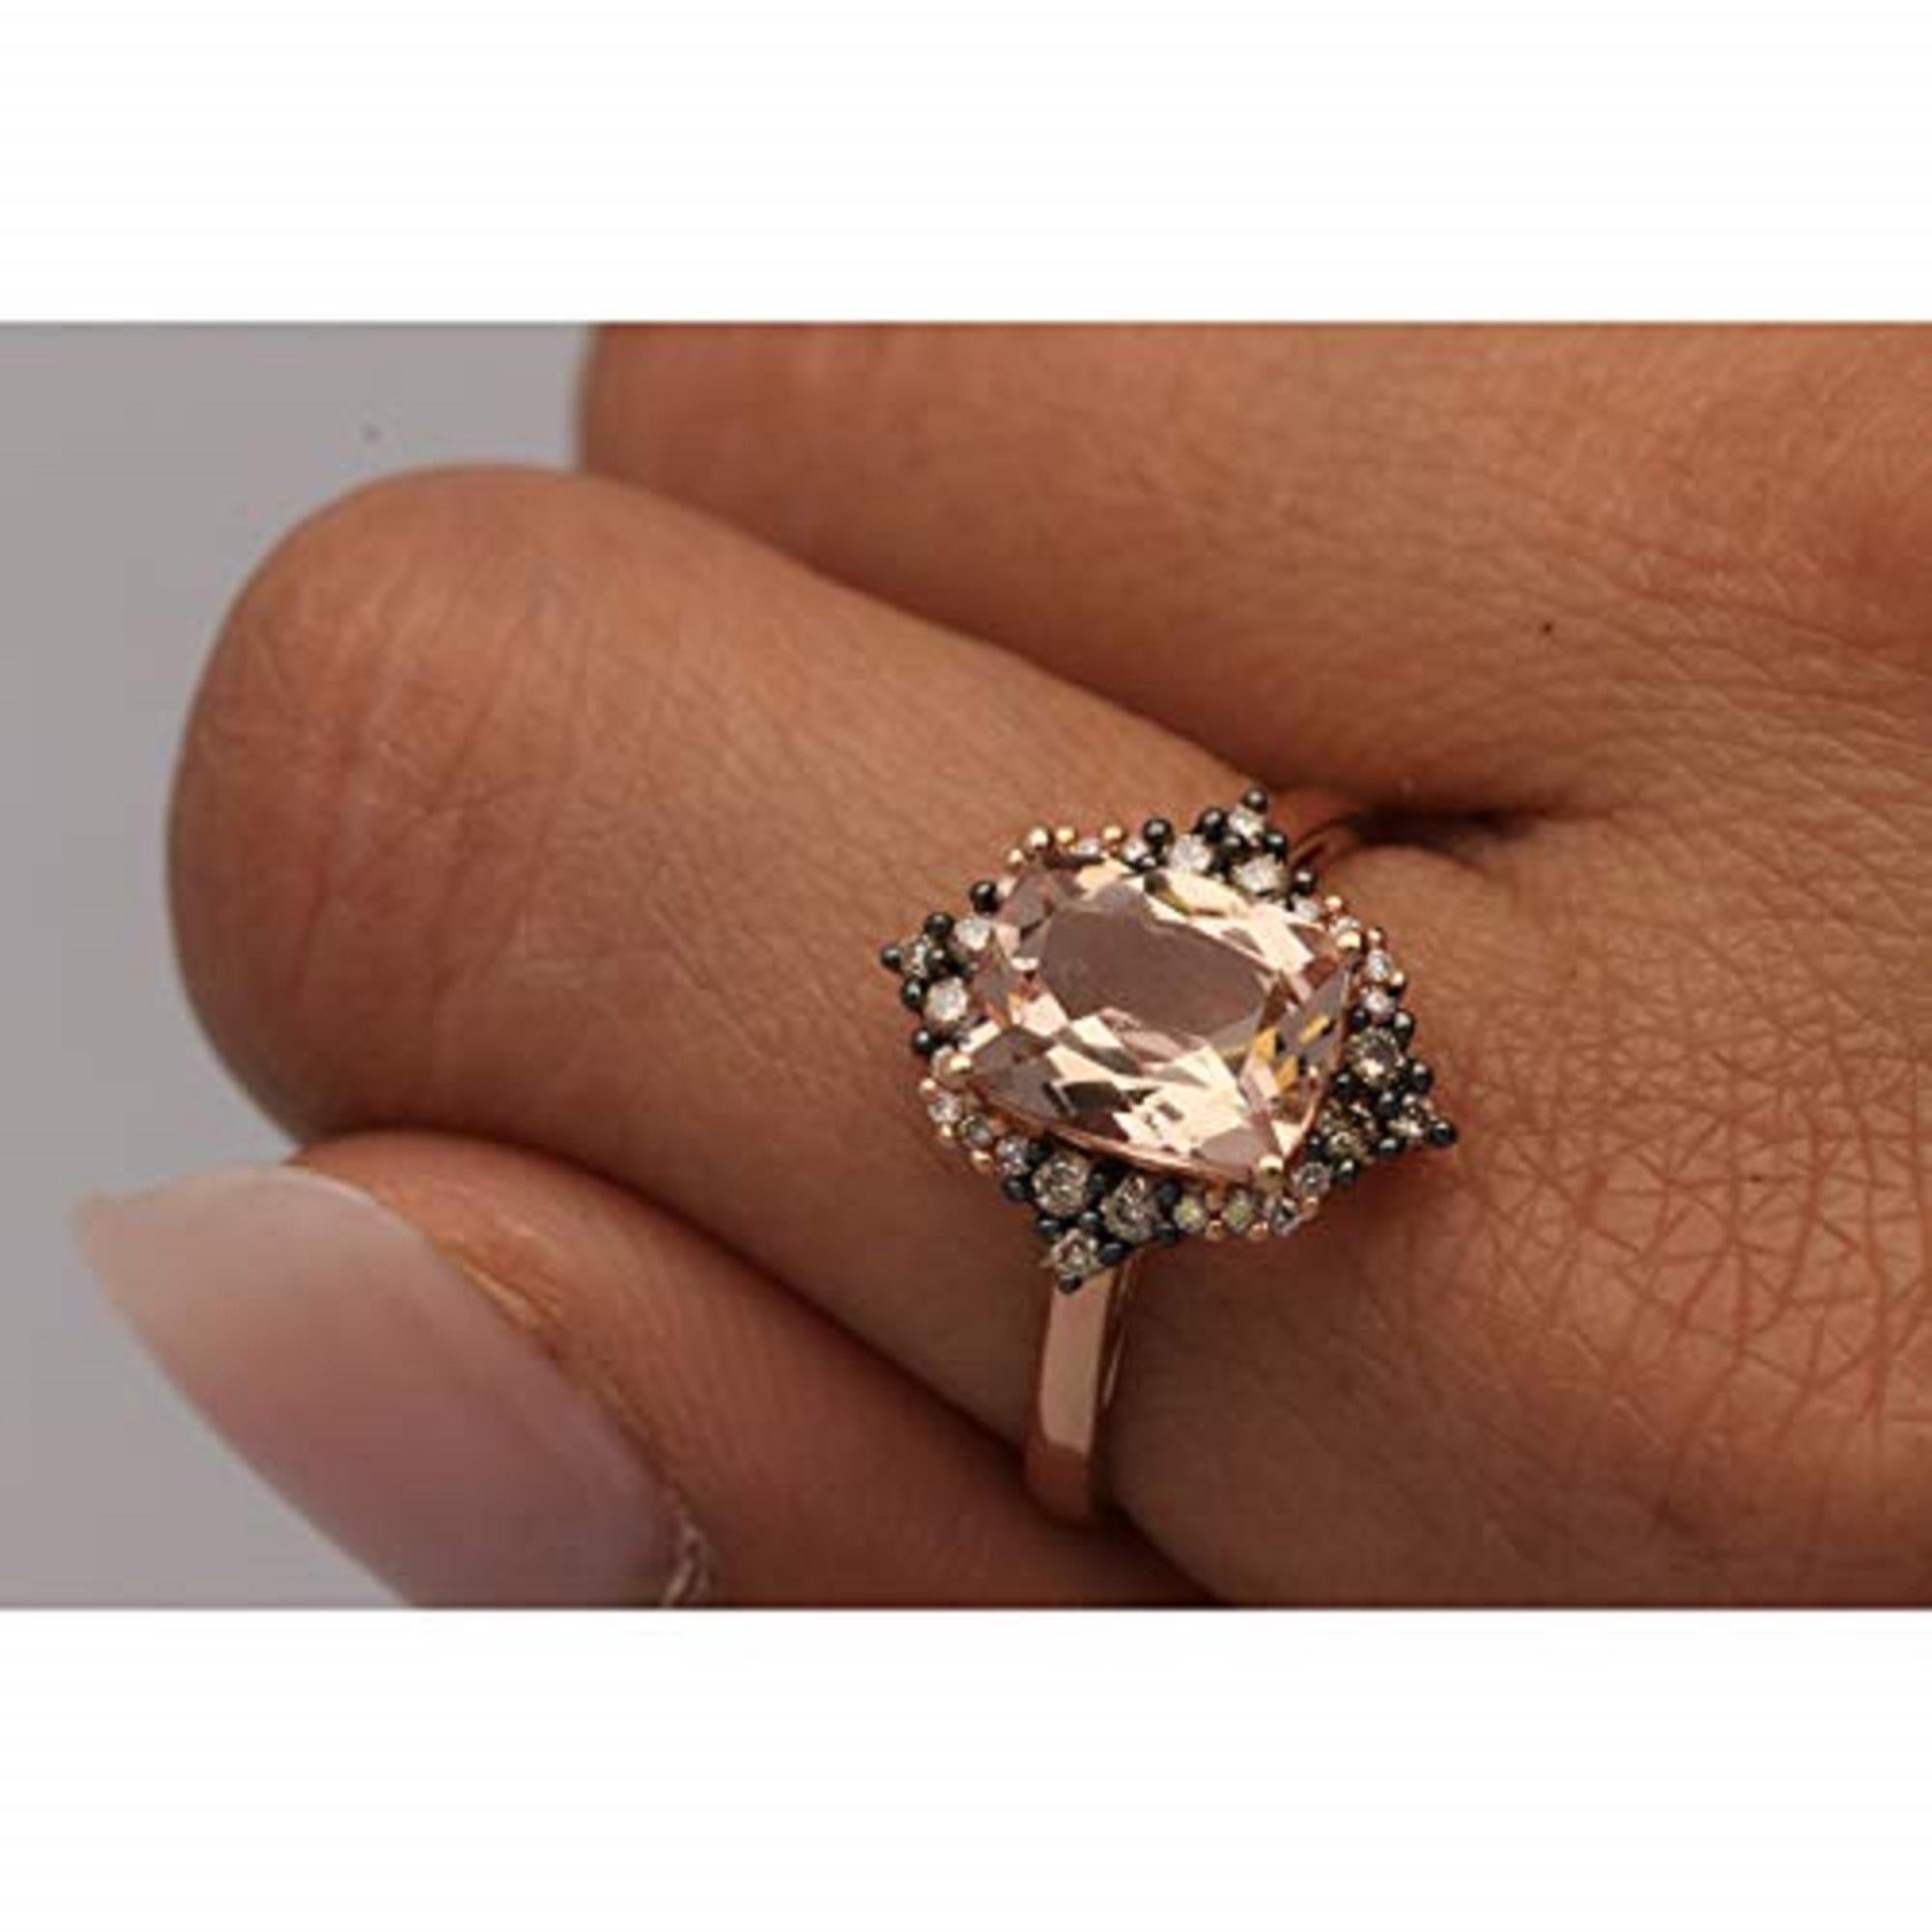 Dieser wunderschöne Ring mit echtem Morganit im Kissenschliff und natürlichem braunen Diamanten von Gin& Grace ist die perfekte Möglichkeit, sich mit Luxus und Eleganz zu schmücken. Der edle Ring ist mit 1/5 Karat schimmernden Diamanten verziert.